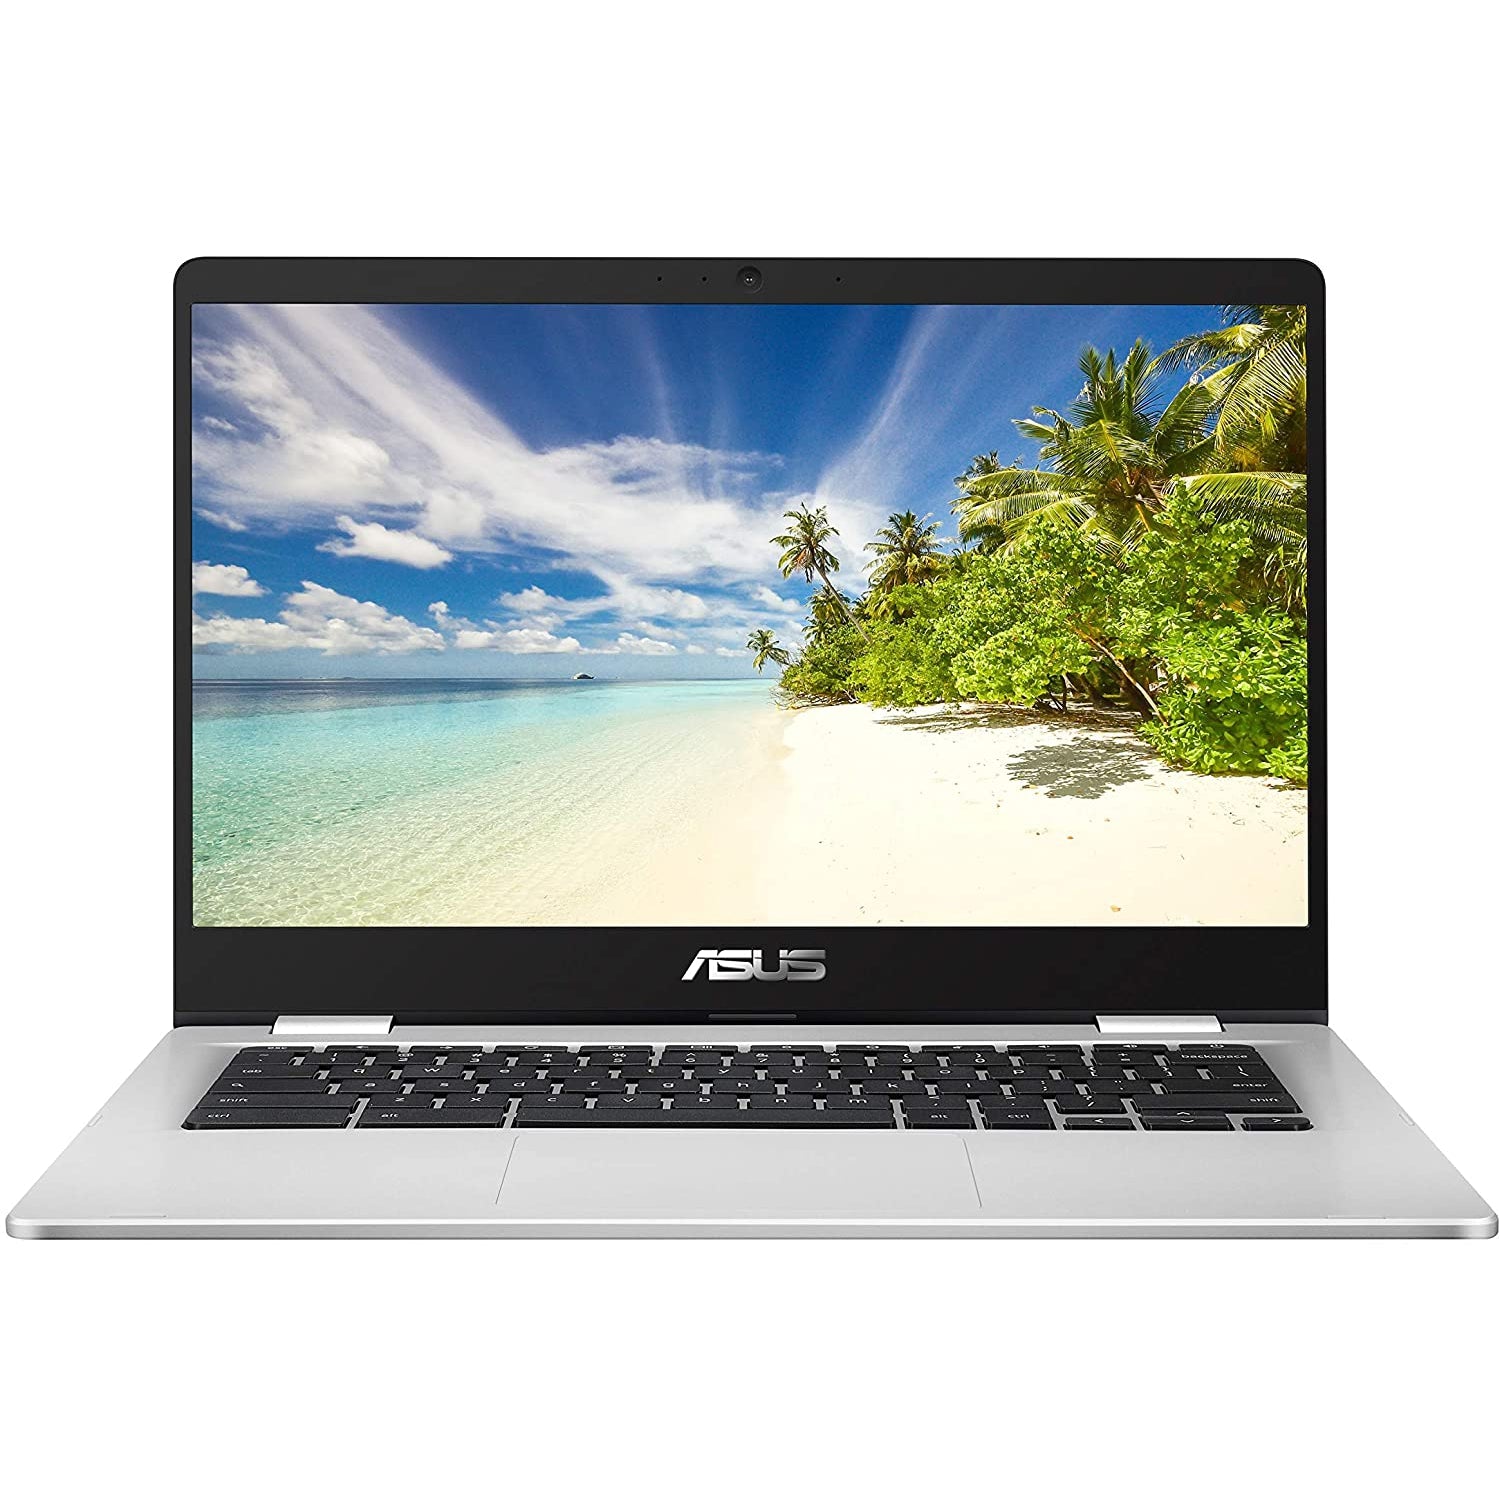 ASUS C423NA-BV0158 Laptop - Intel Celeron 4GB RAM 64GB eMMC 14" - Silver - Refurbished Good